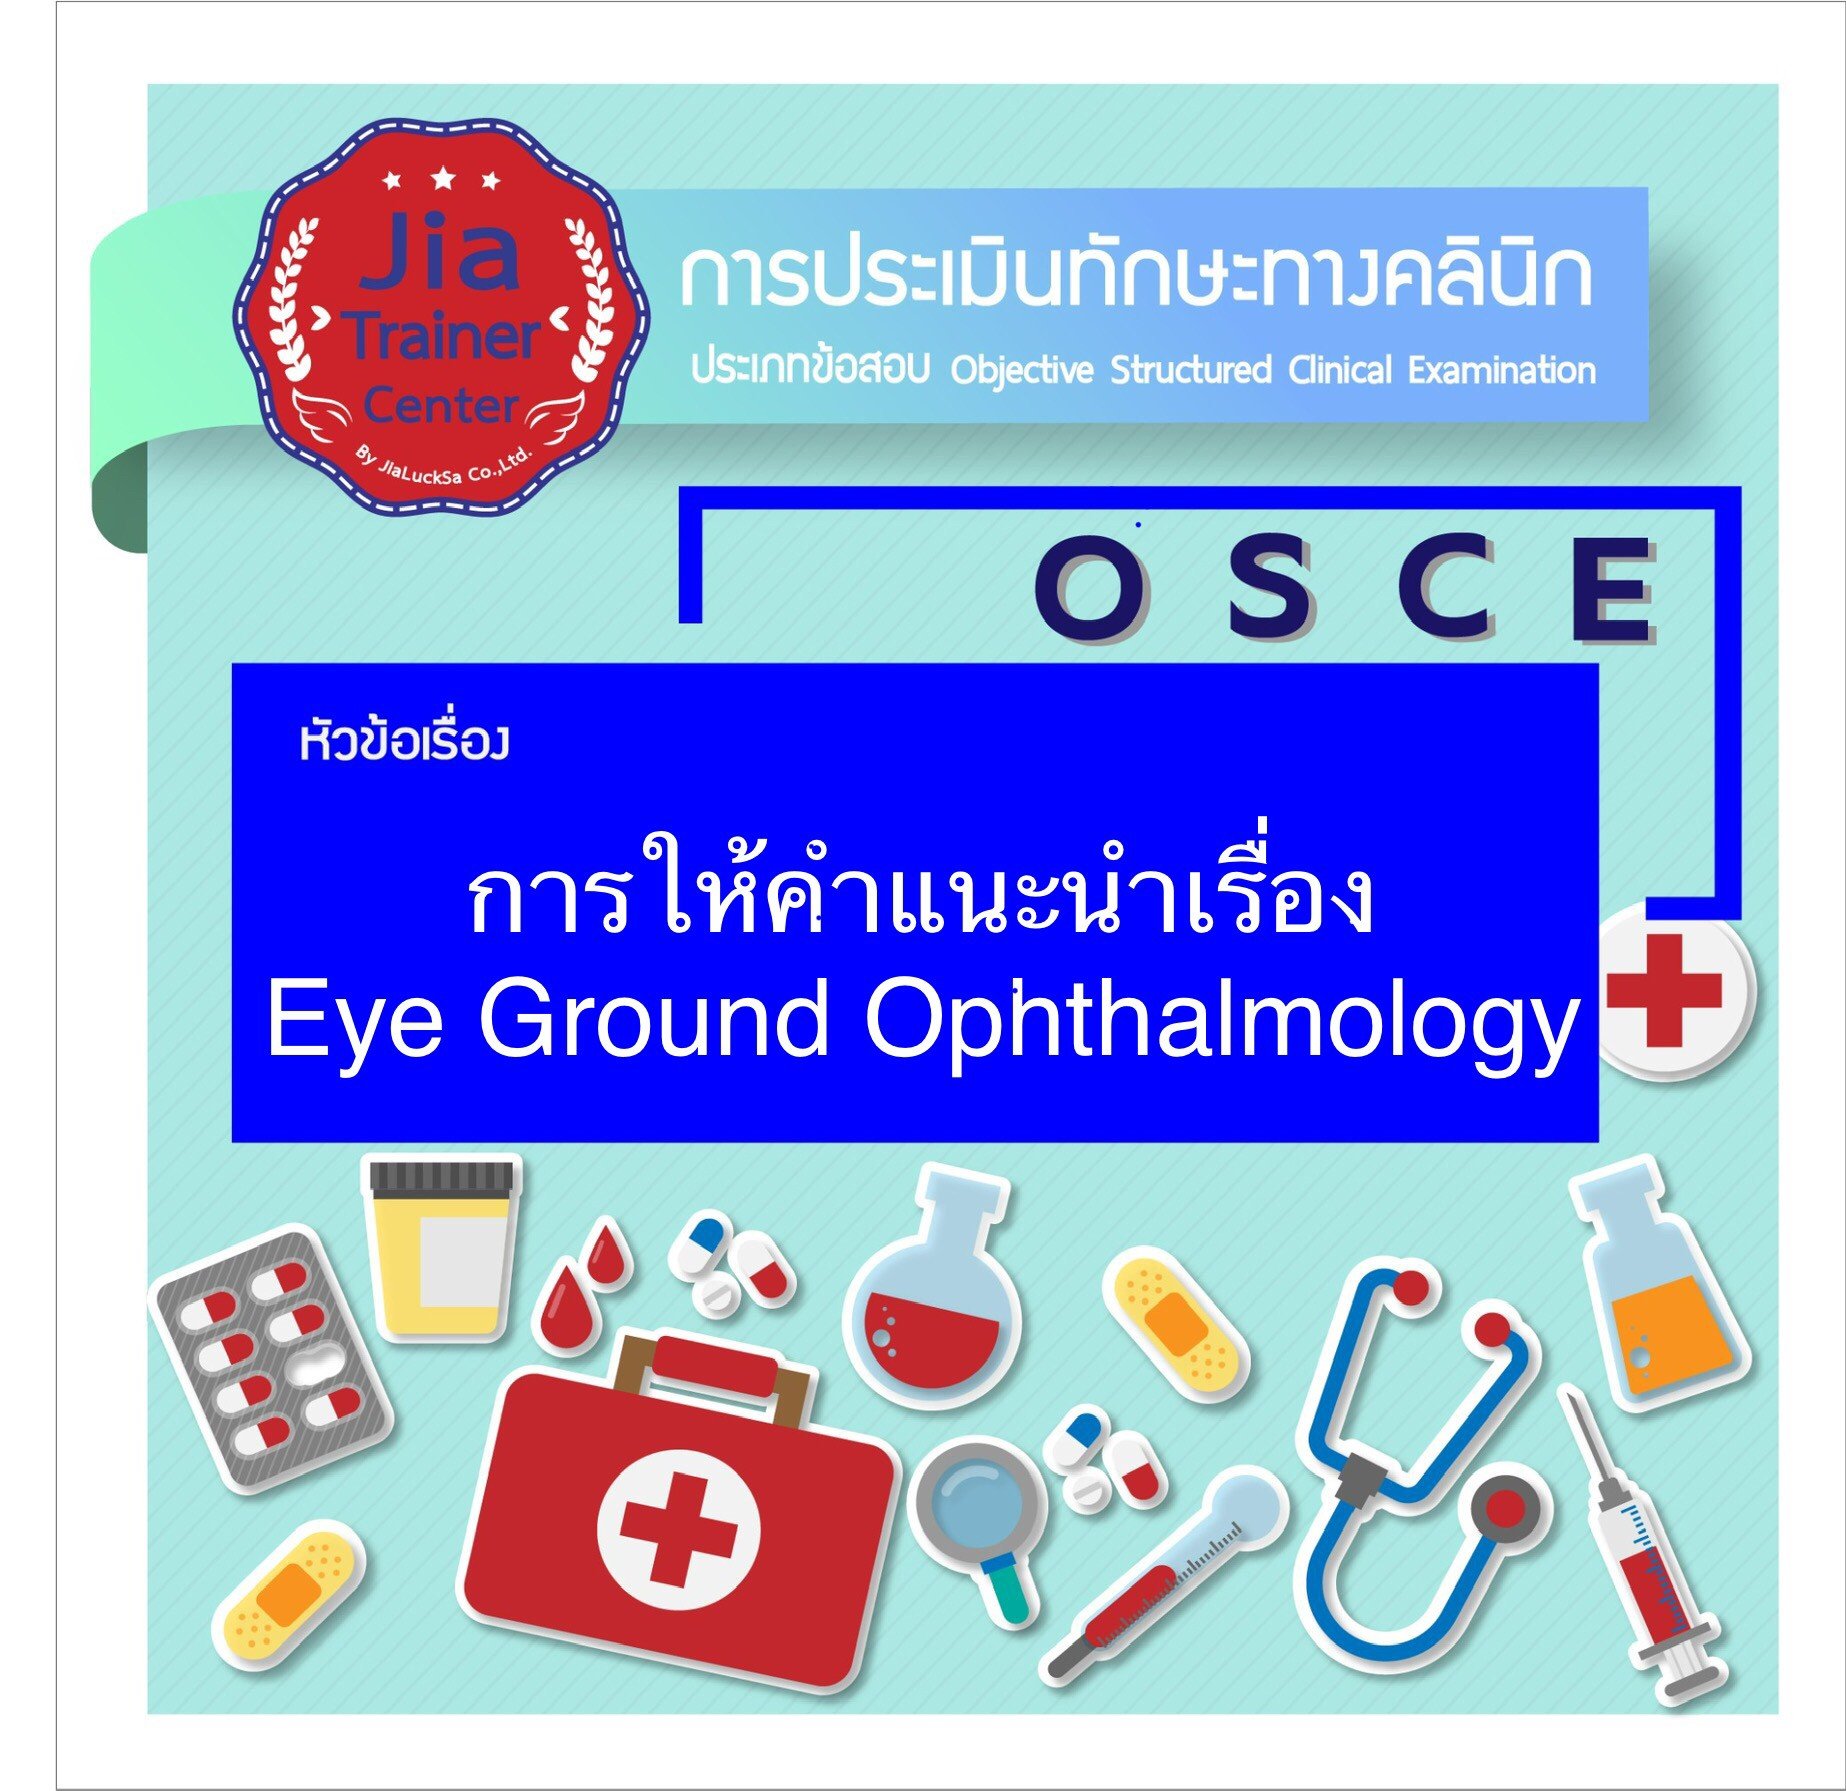 Osce-การให้คำแนะนำเรื่อง Eye Ground Ophthalmology